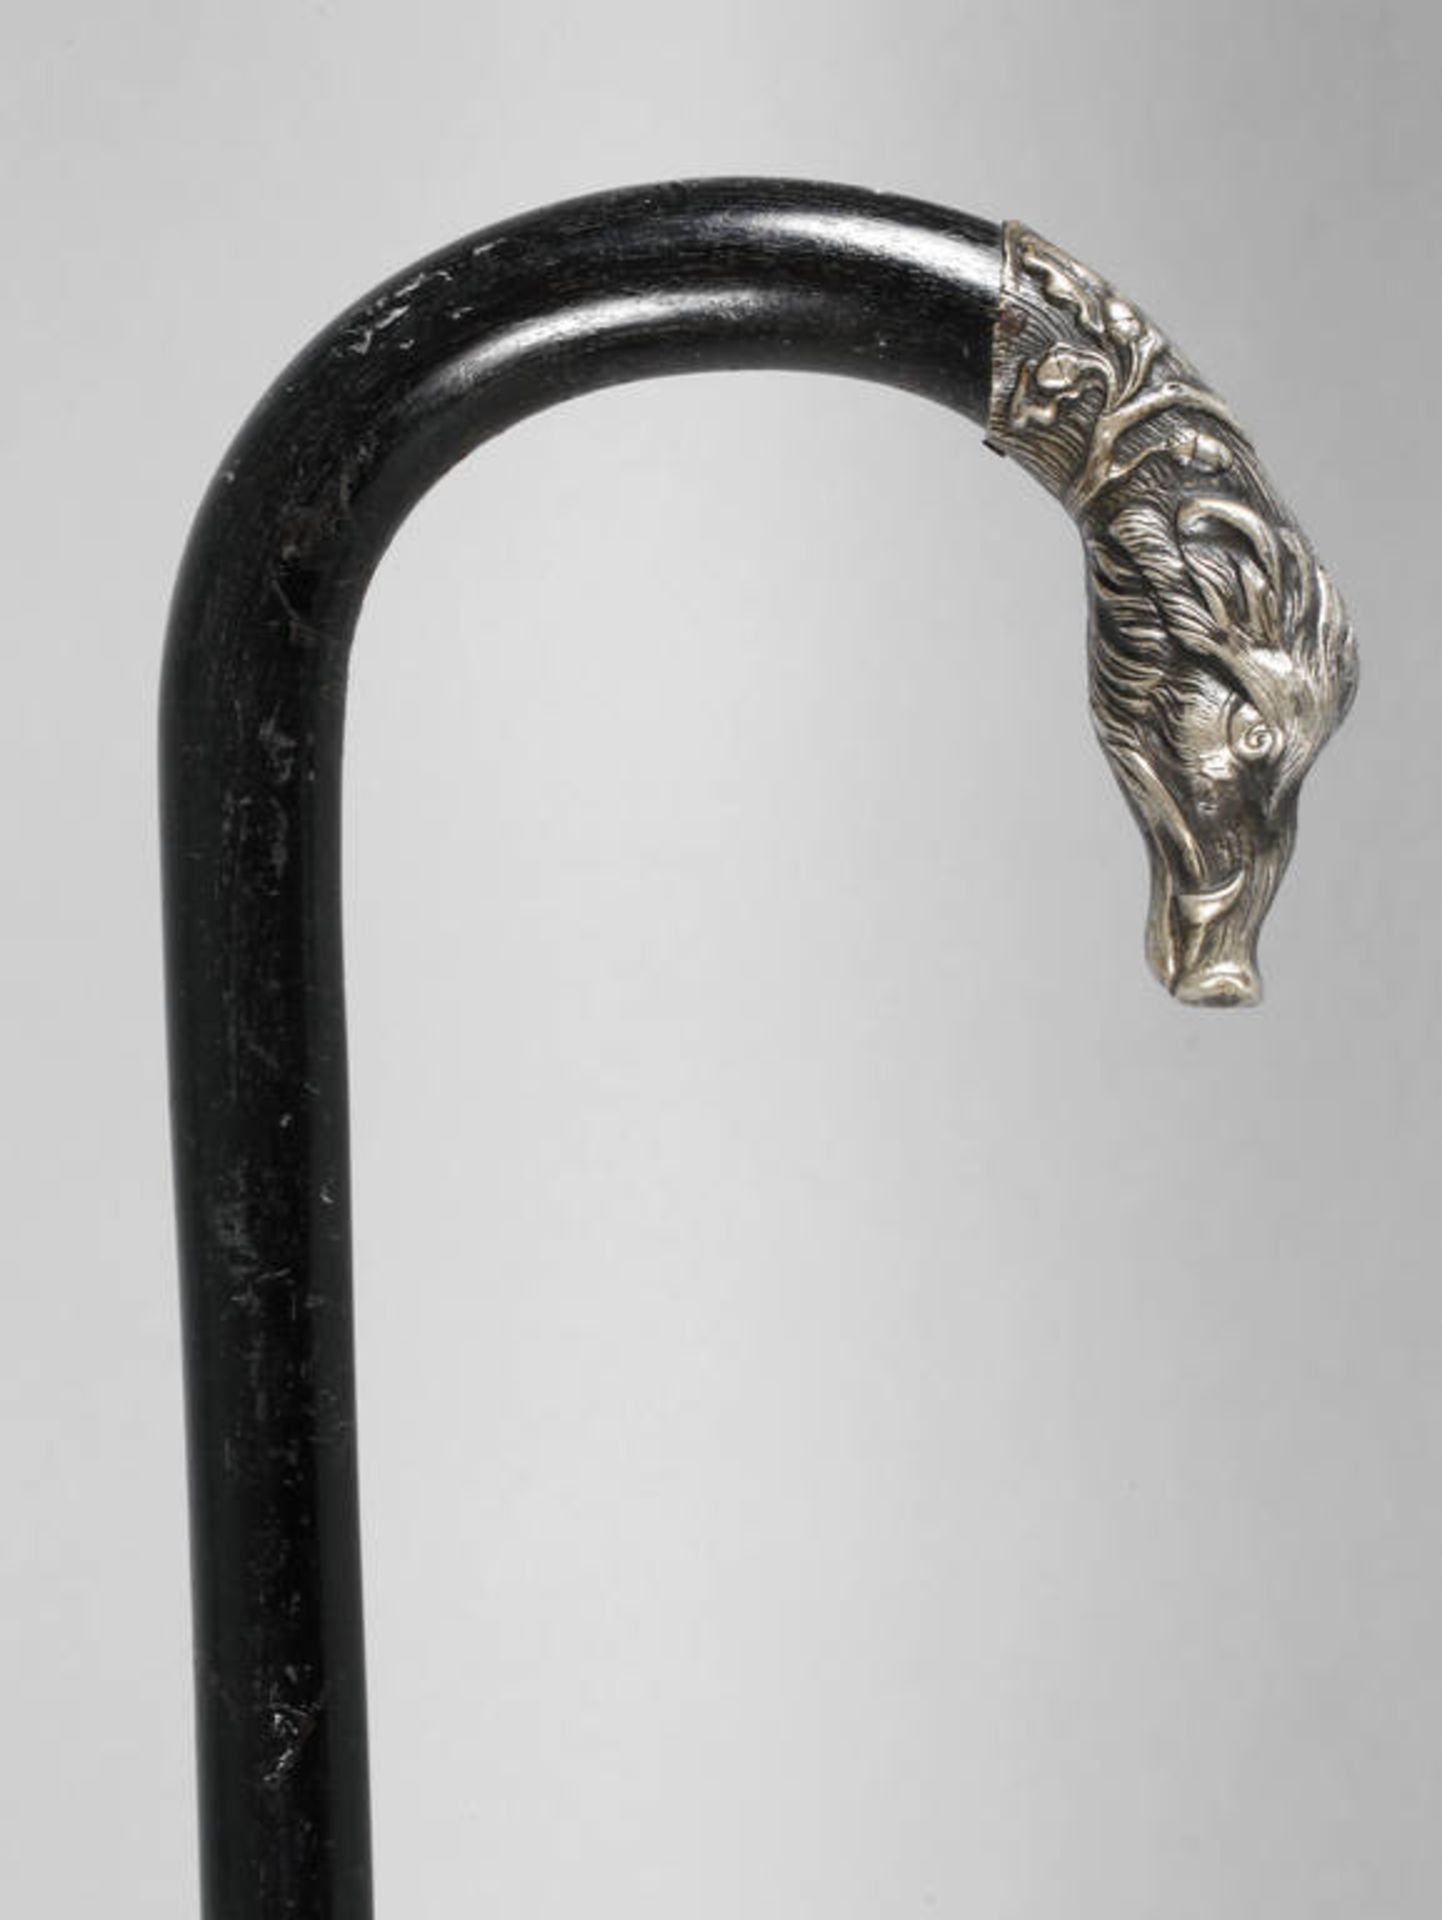 Jagdlicher Spazierstock
um 1900, Griff in Form einer Wildsau, aus versilbertem Metall, mit